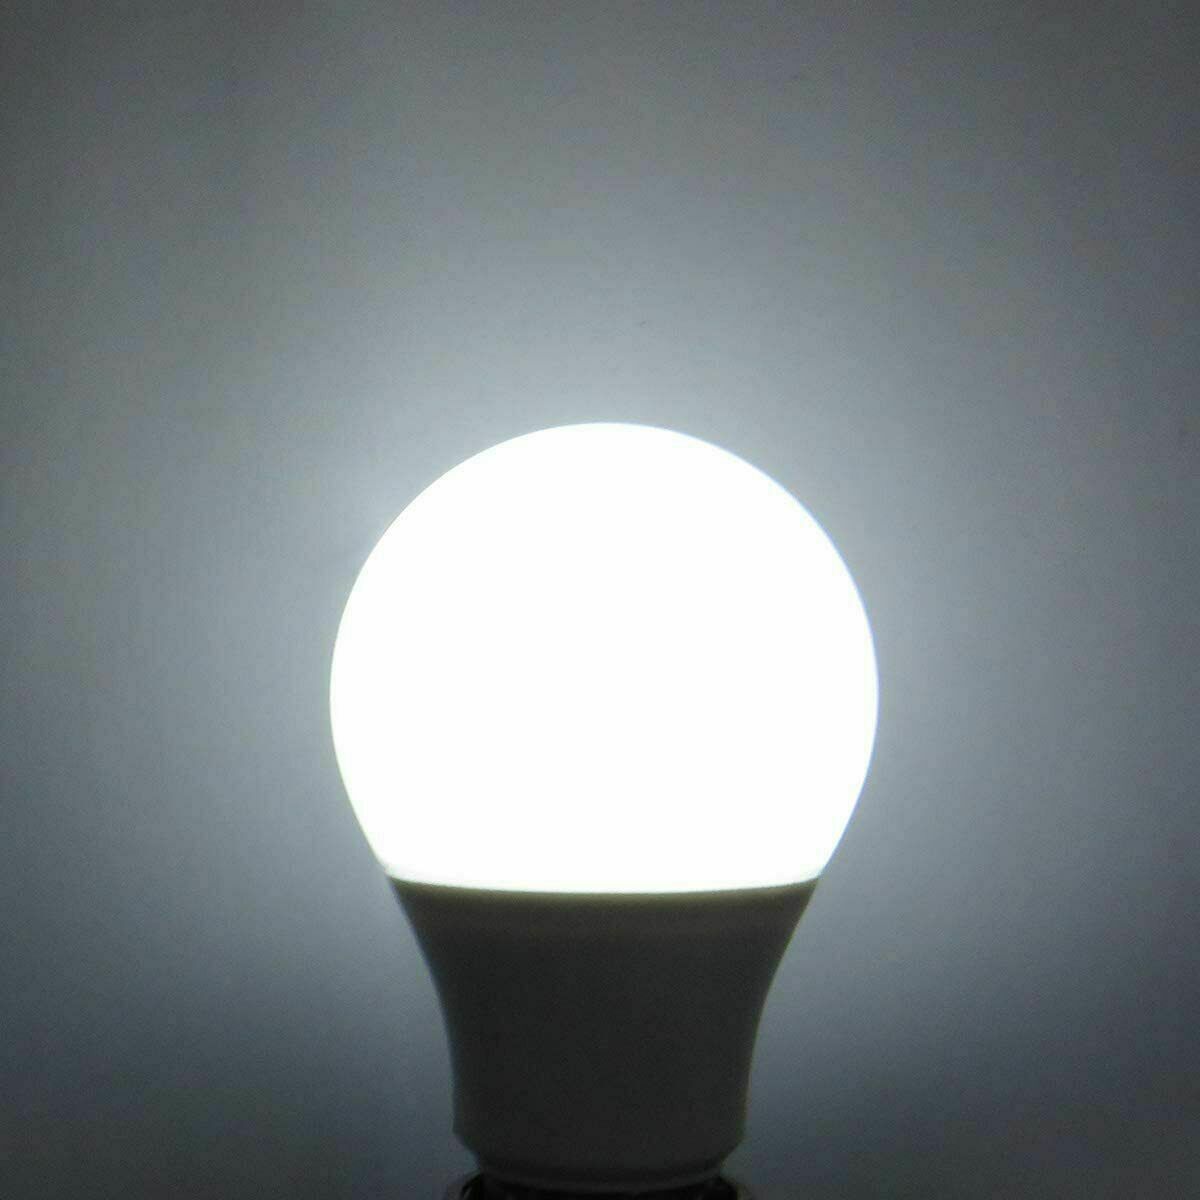 5 W E27 Schraub-LED-Licht GLS-Lampen, energiesparende Edison Cool White 6000 K nicht dimmbare Lichter